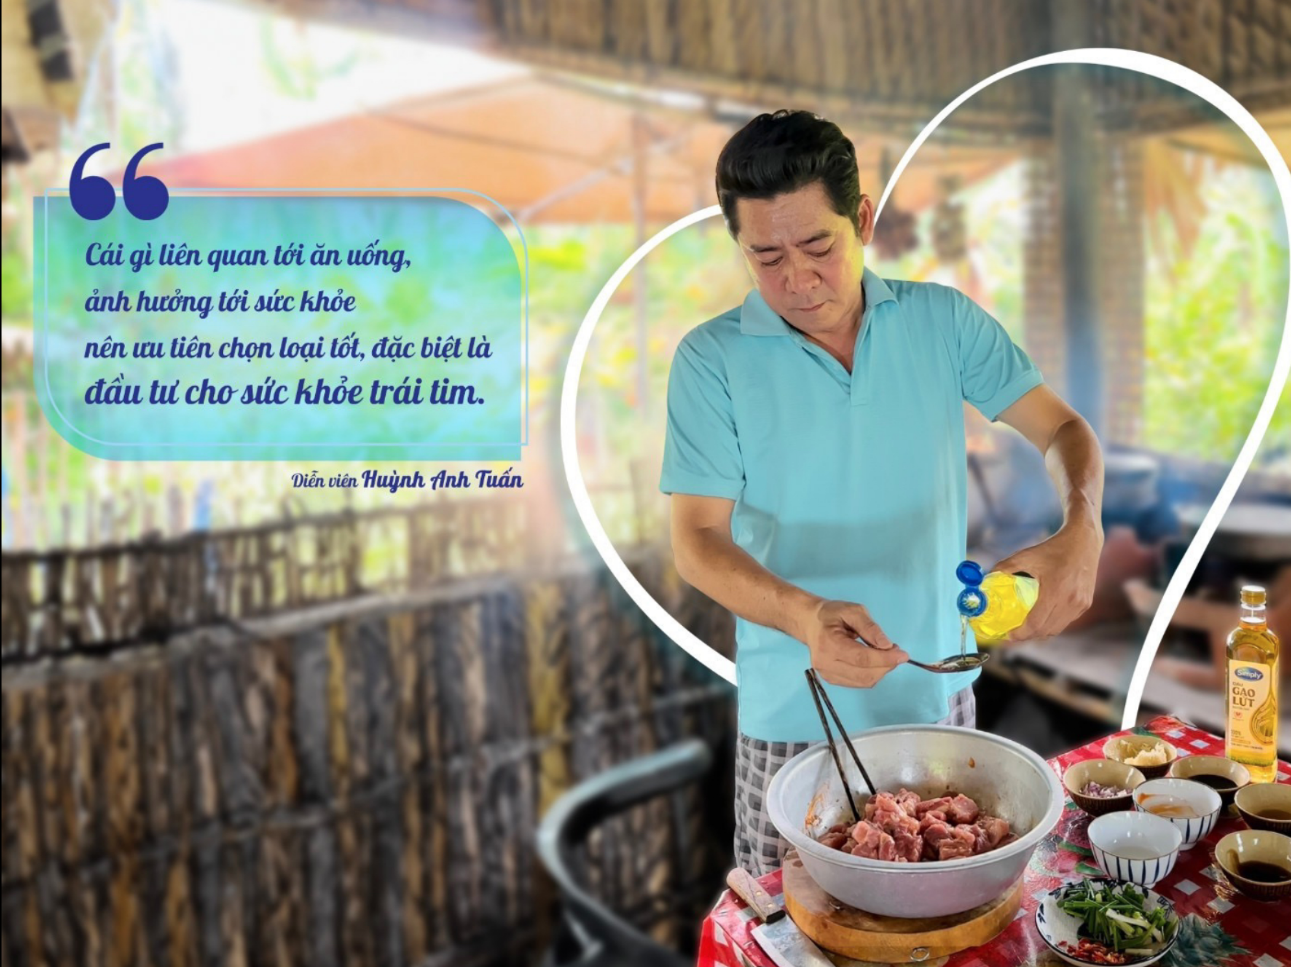 Đột nhập nhà sao Việt, học cách đầu tư cho trái tim từ căn bếp - Ảnh 4.